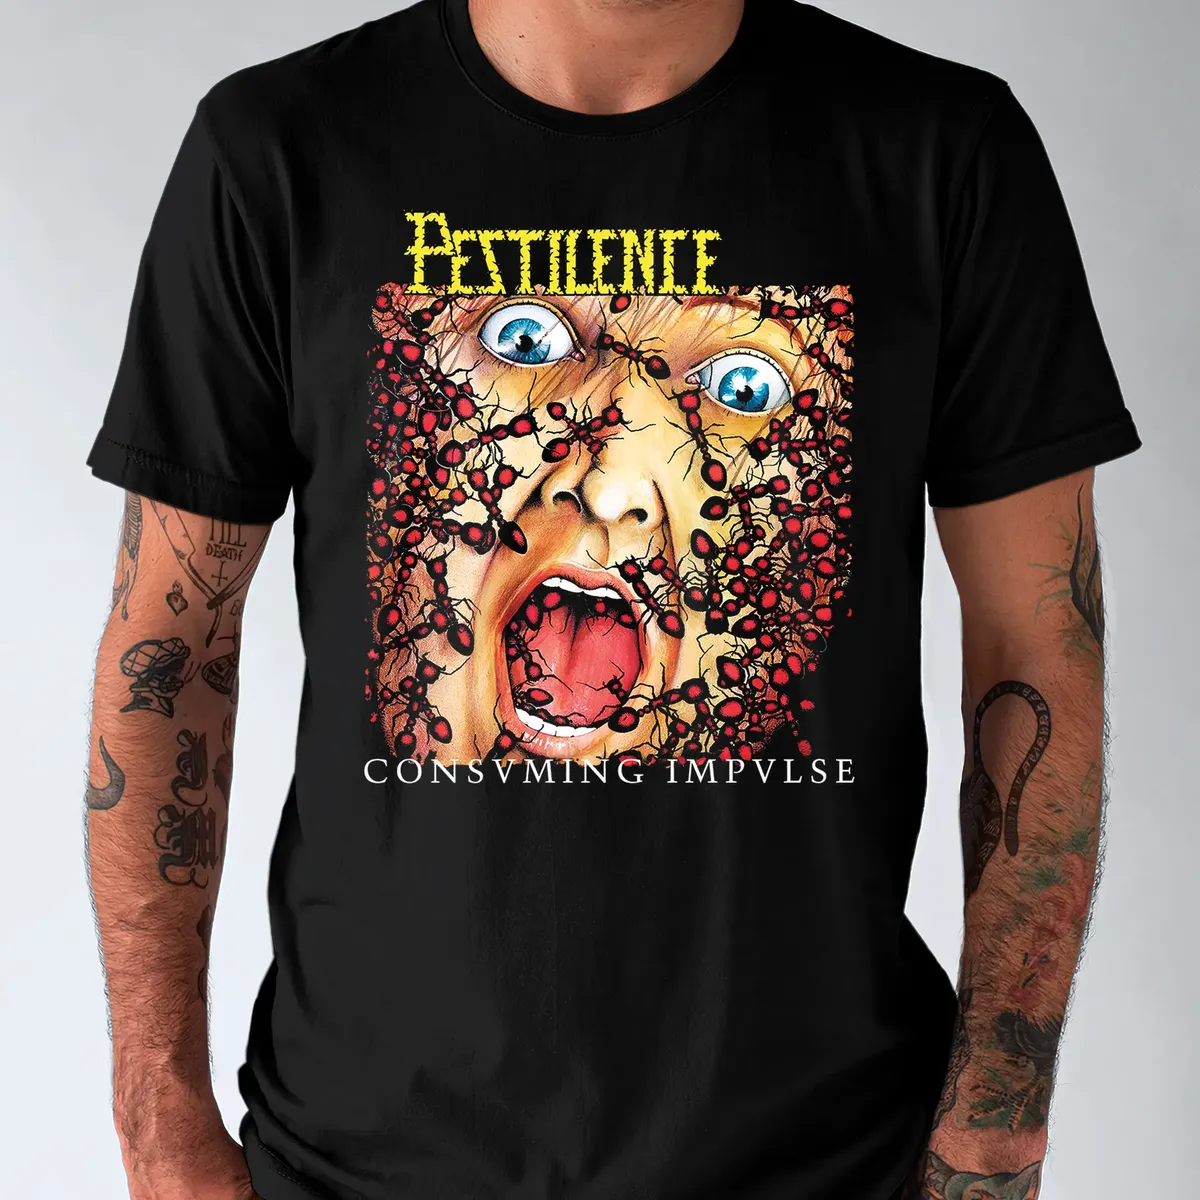 Nome do produto: Camiseta Pestilence Consvming Impvlse